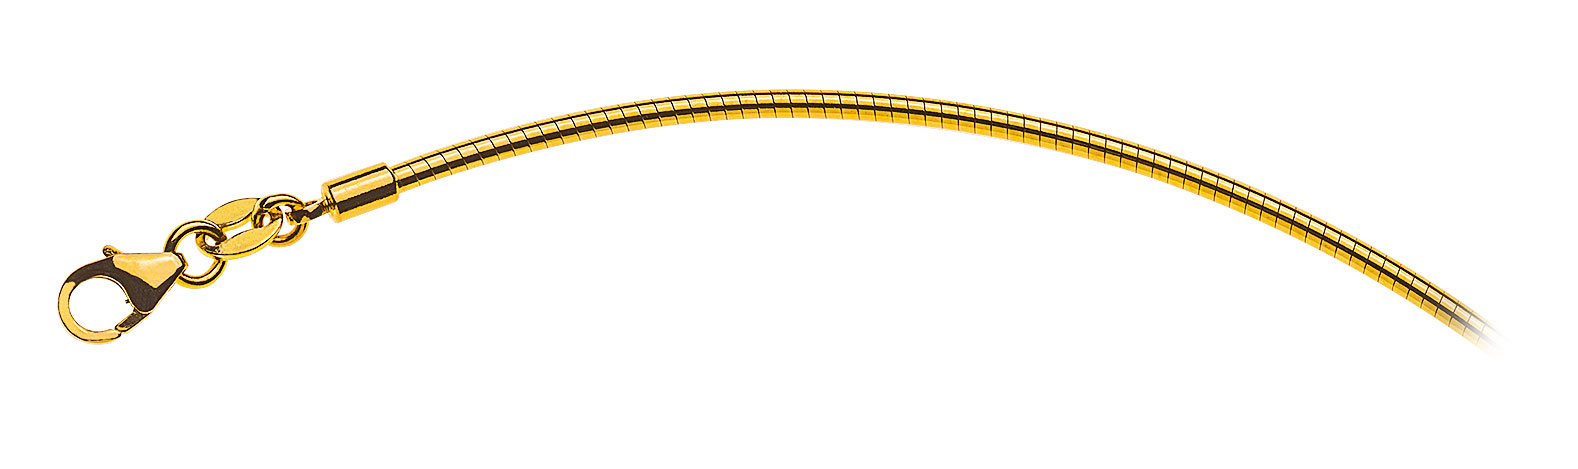 AURONOS Prestige Halskette Gelbgold 18K Omegakette 50cm 1.8mm